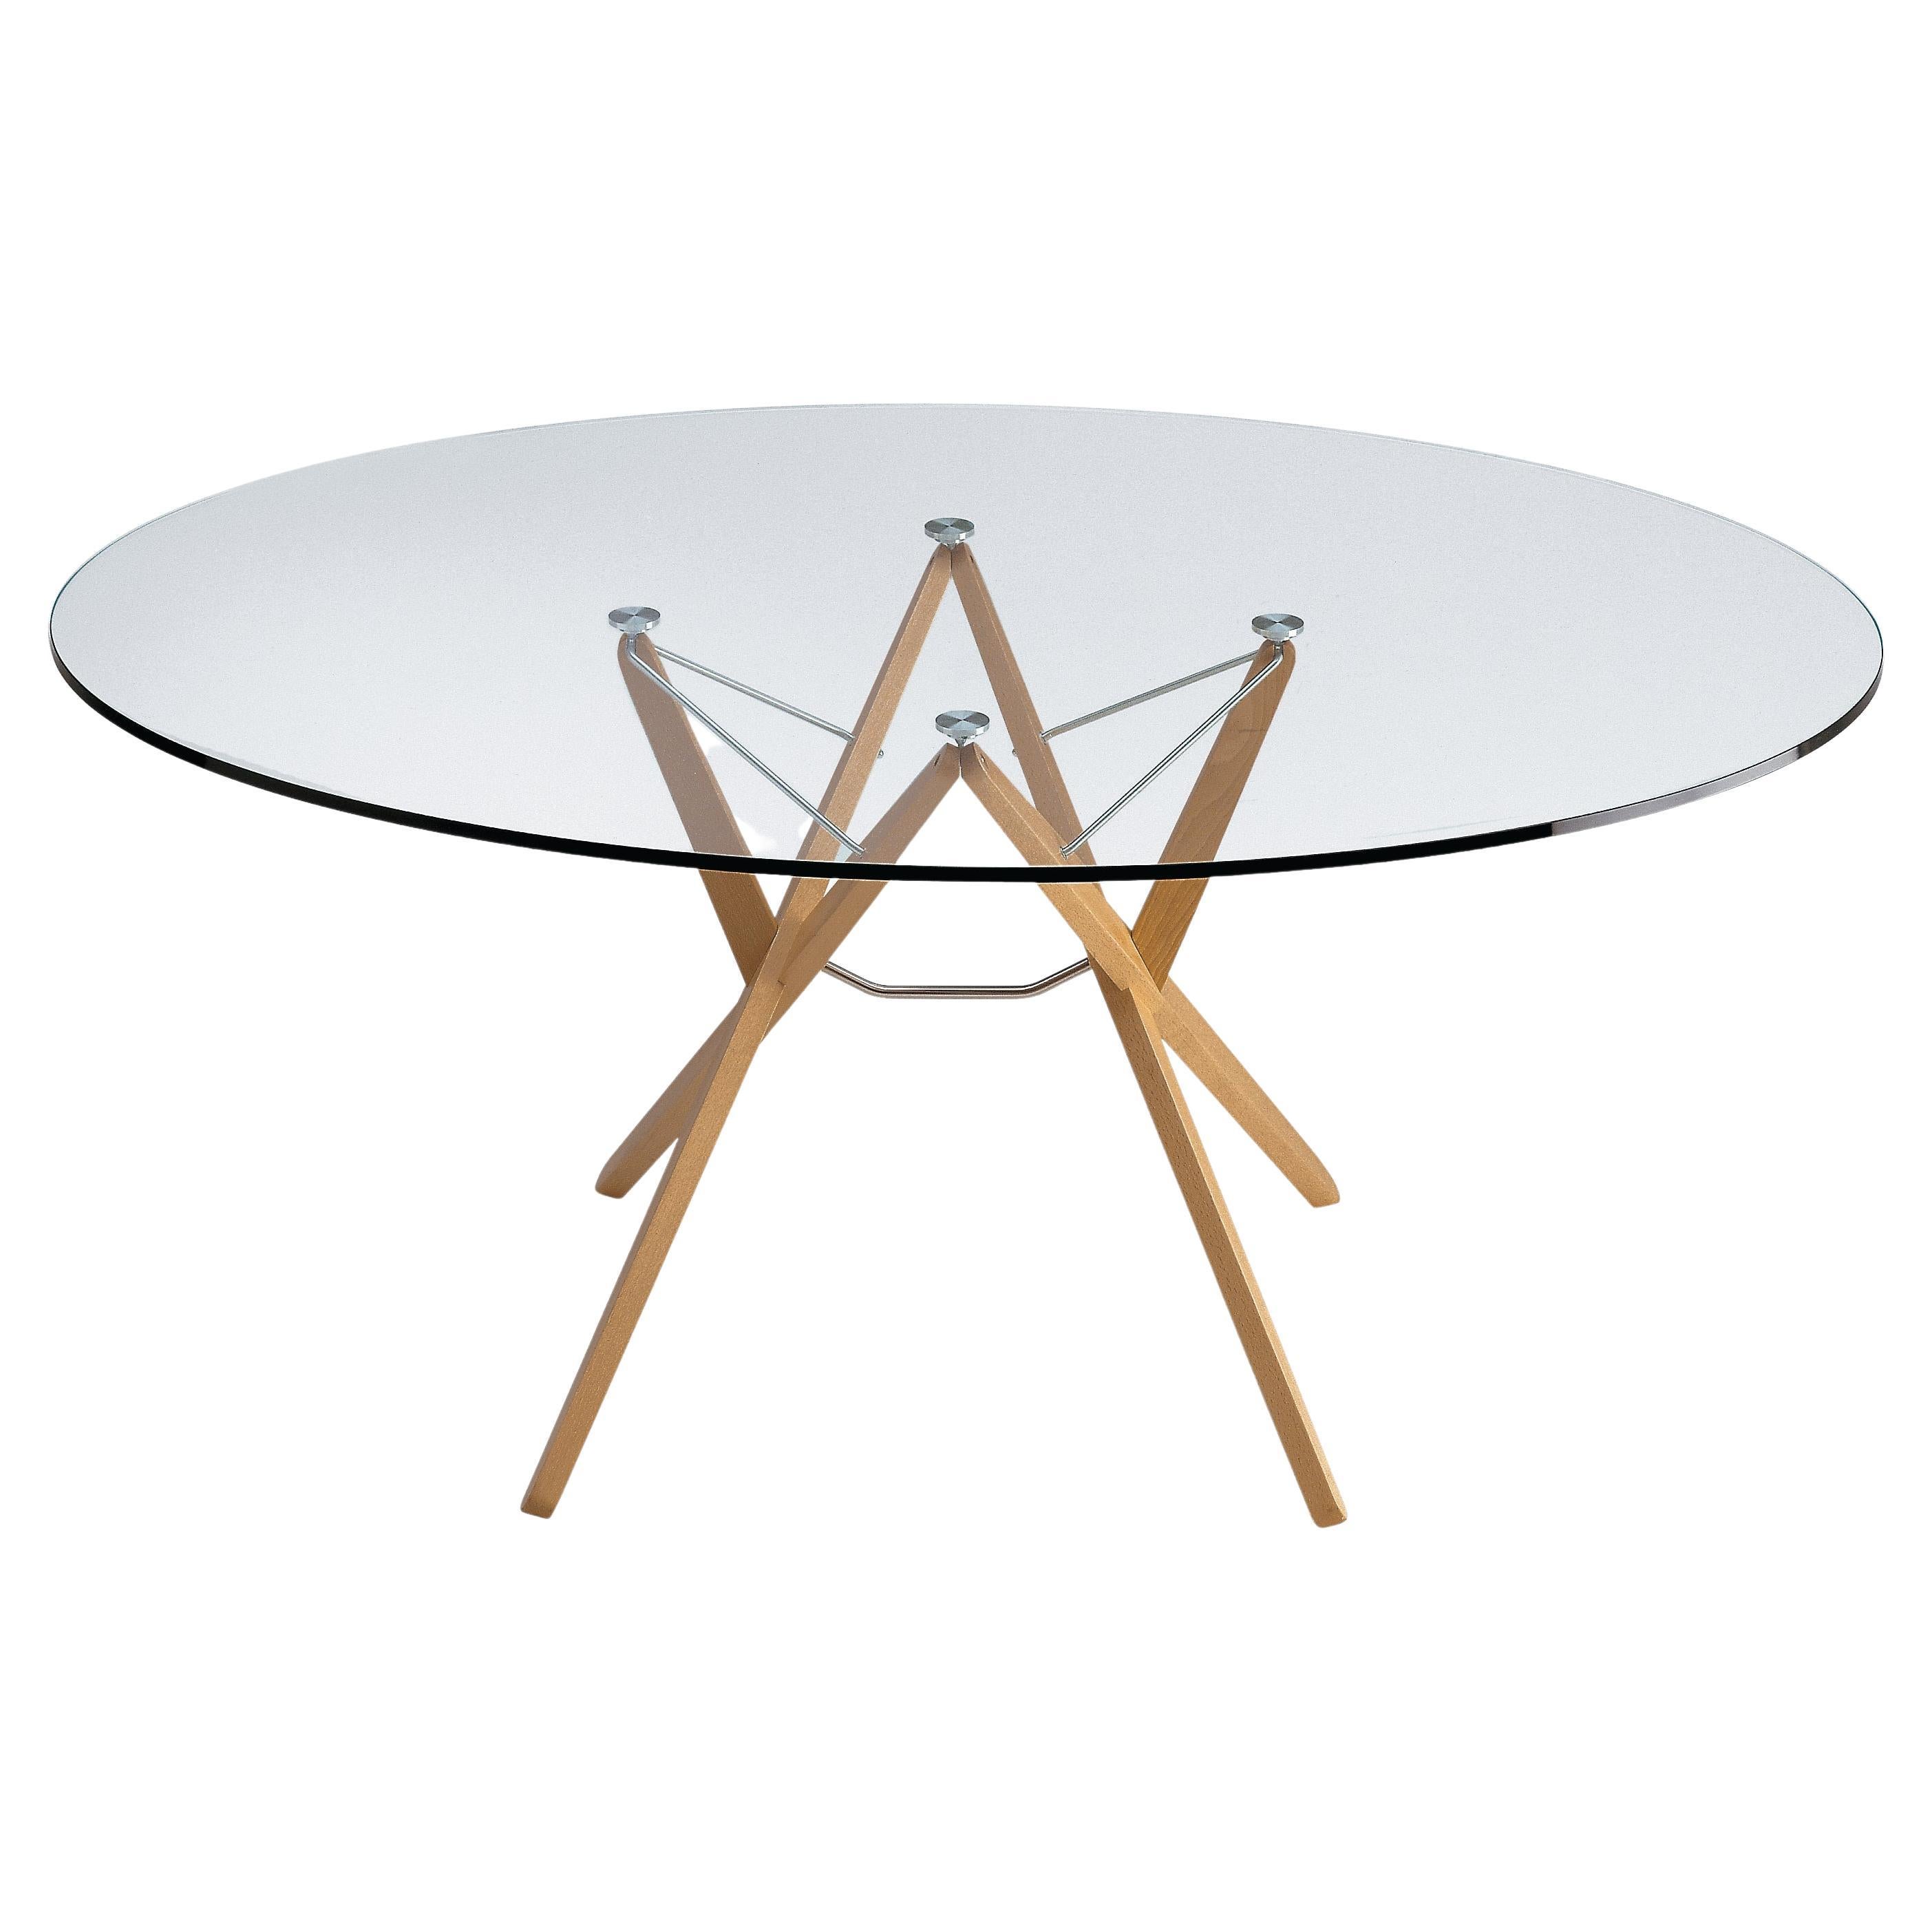 Petite table Orione de Zanotta avec plateau en verre plaqué et cadre en chêne naturel